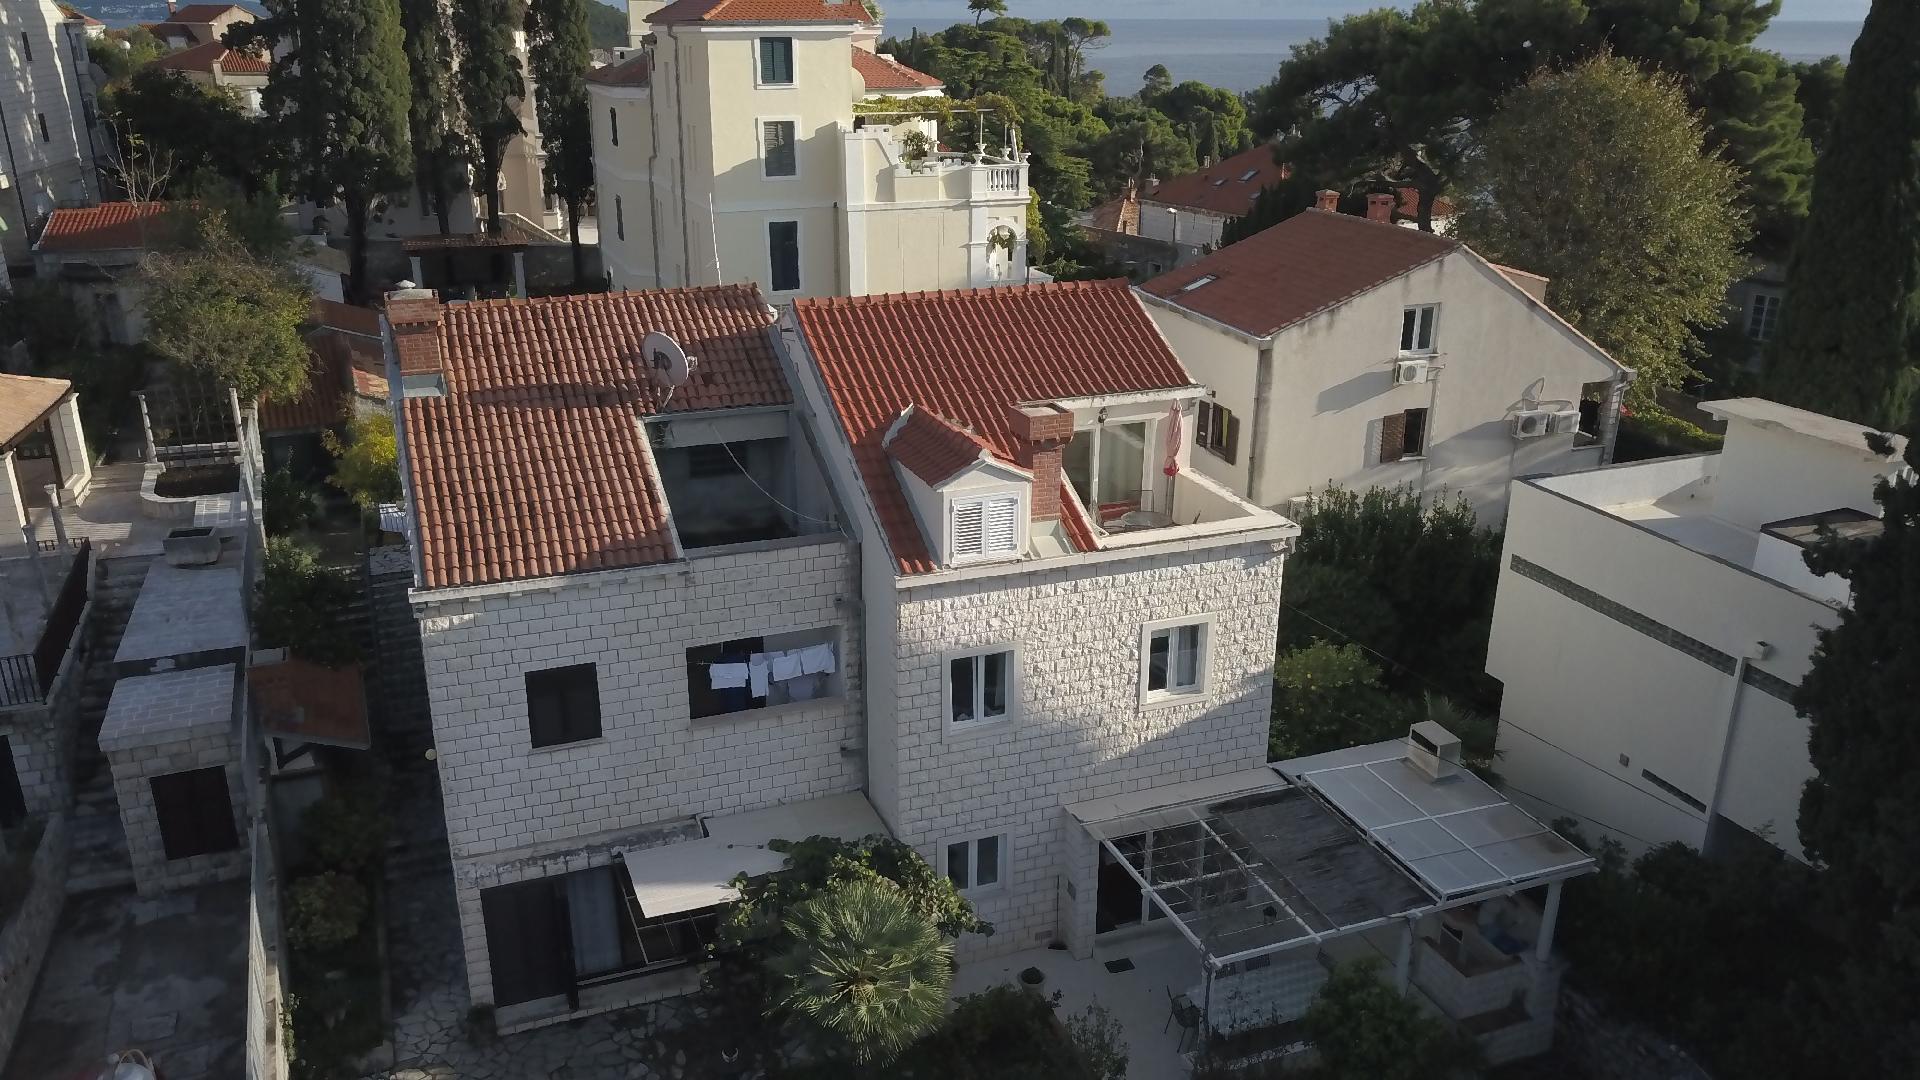 Appartement mit überdachtem Balkon Ferienwohnung in Kroatien